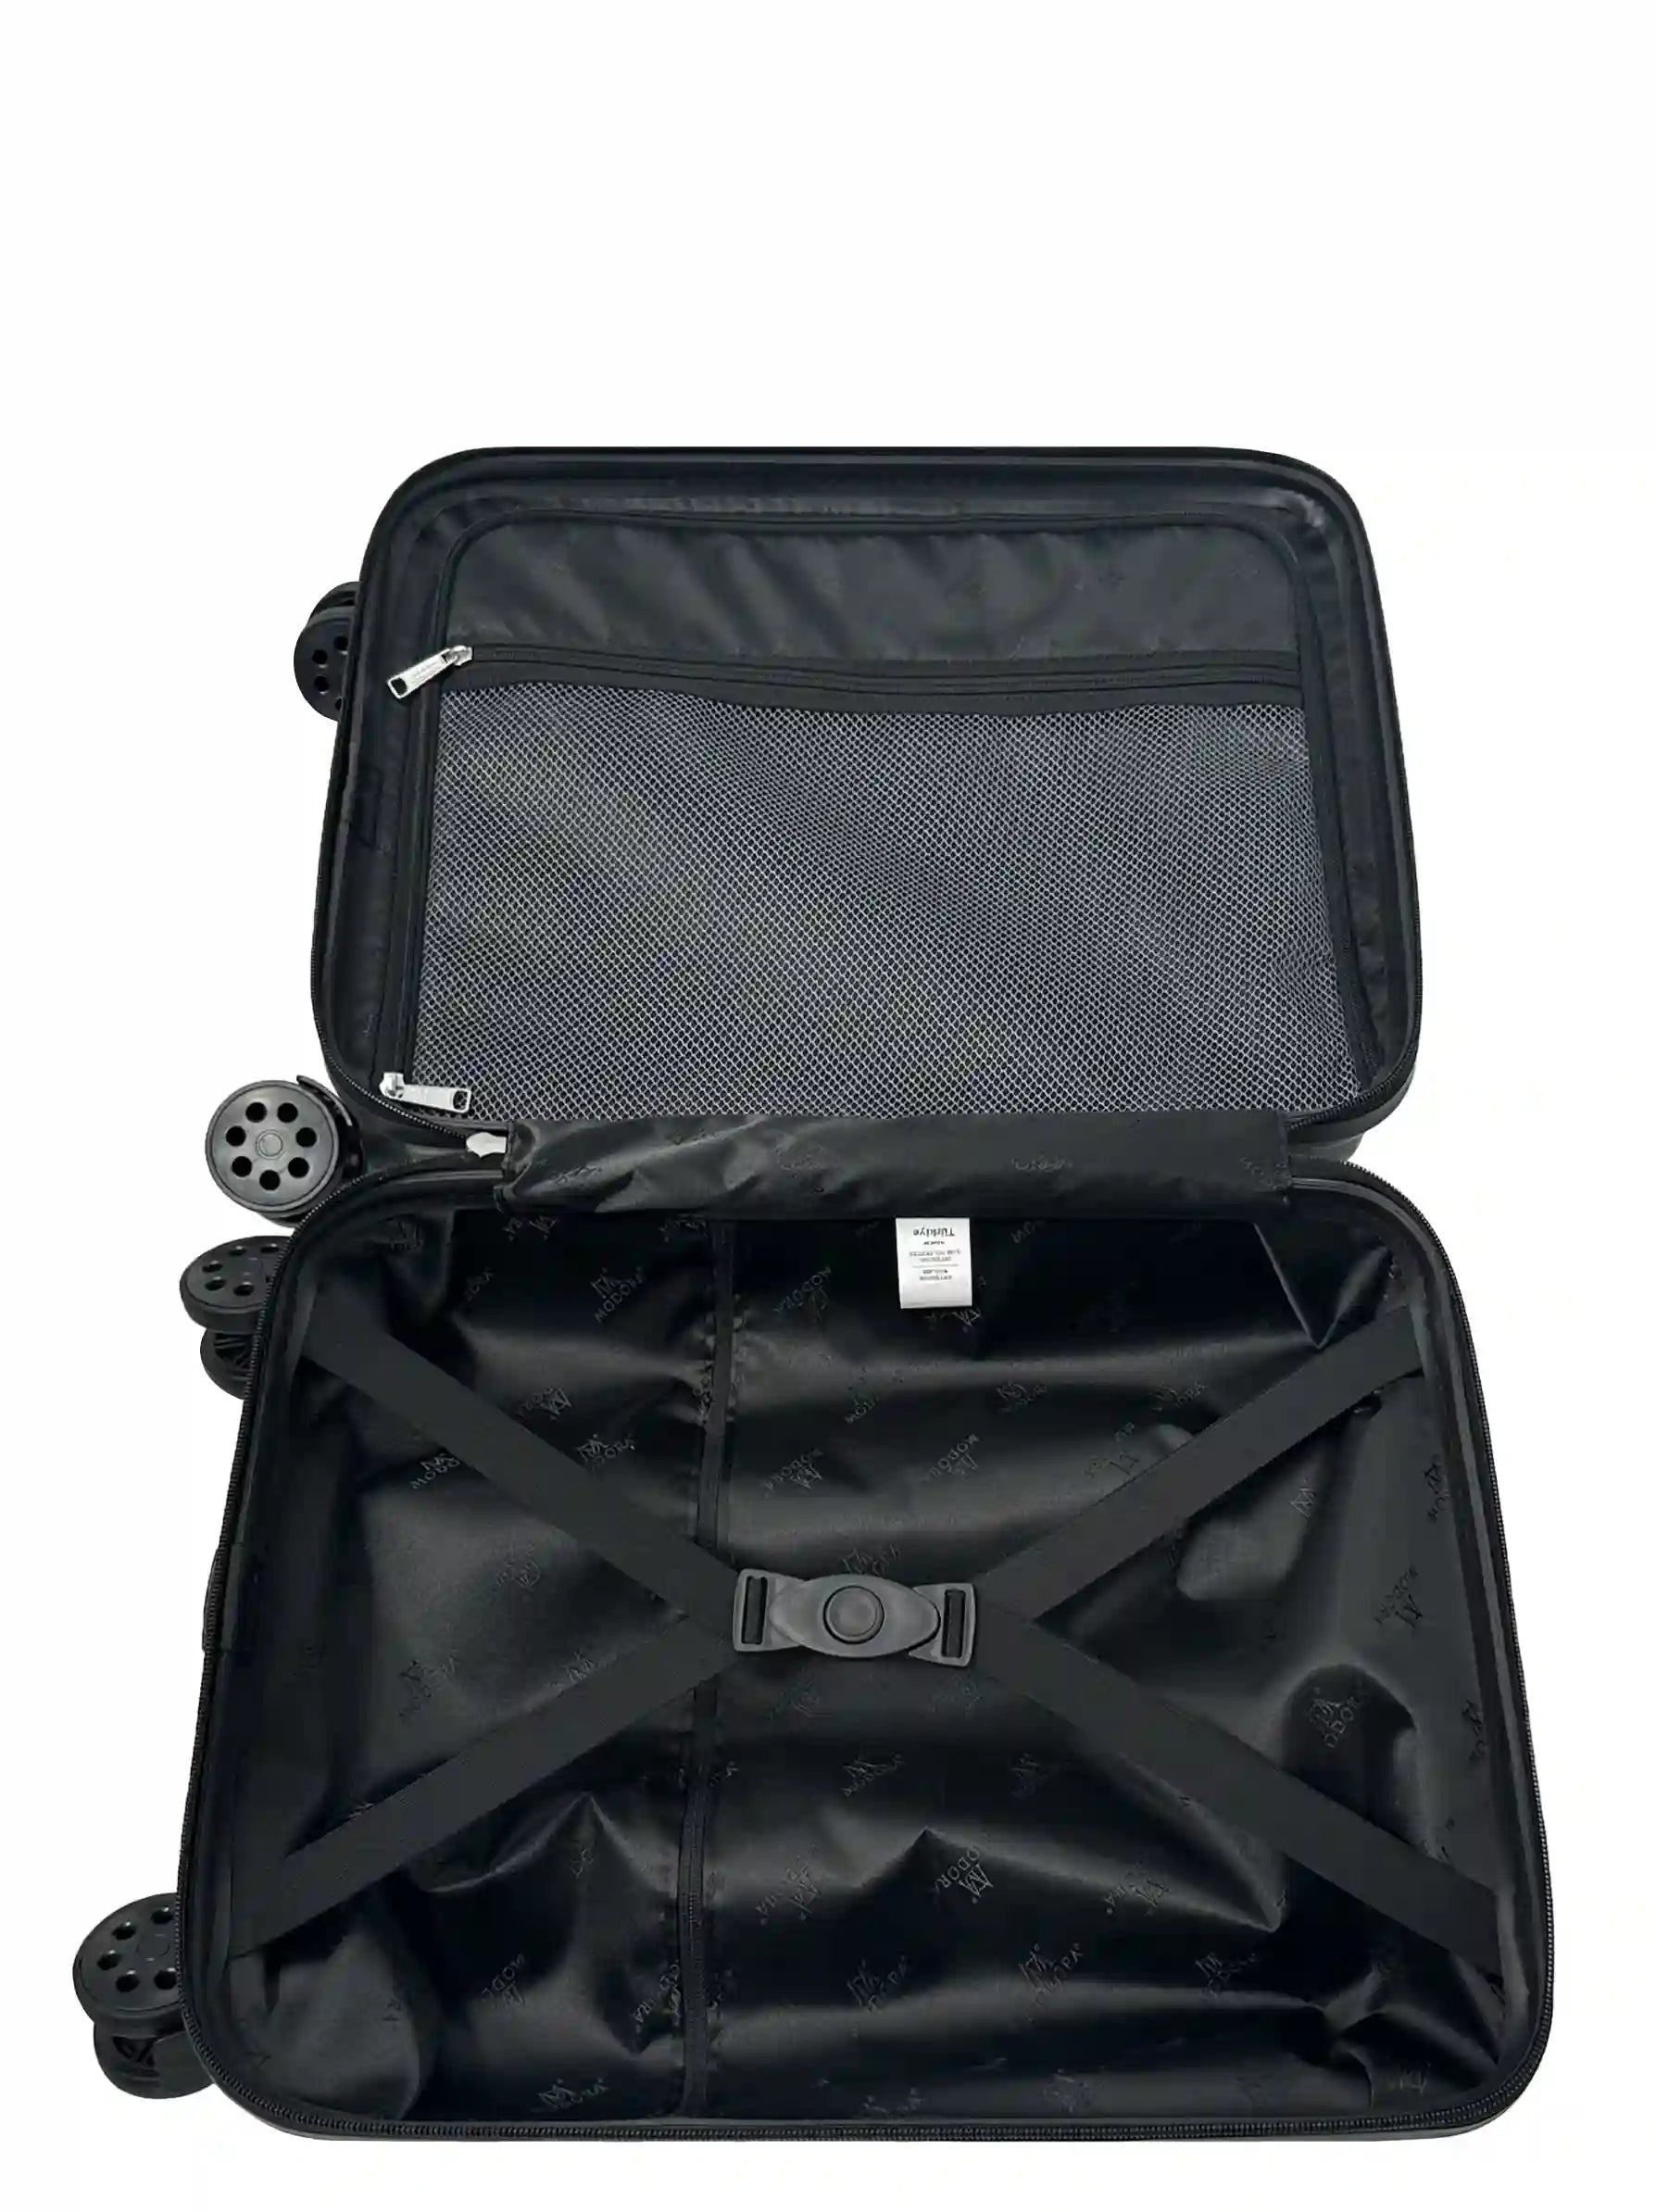 Vague black medium suitcase